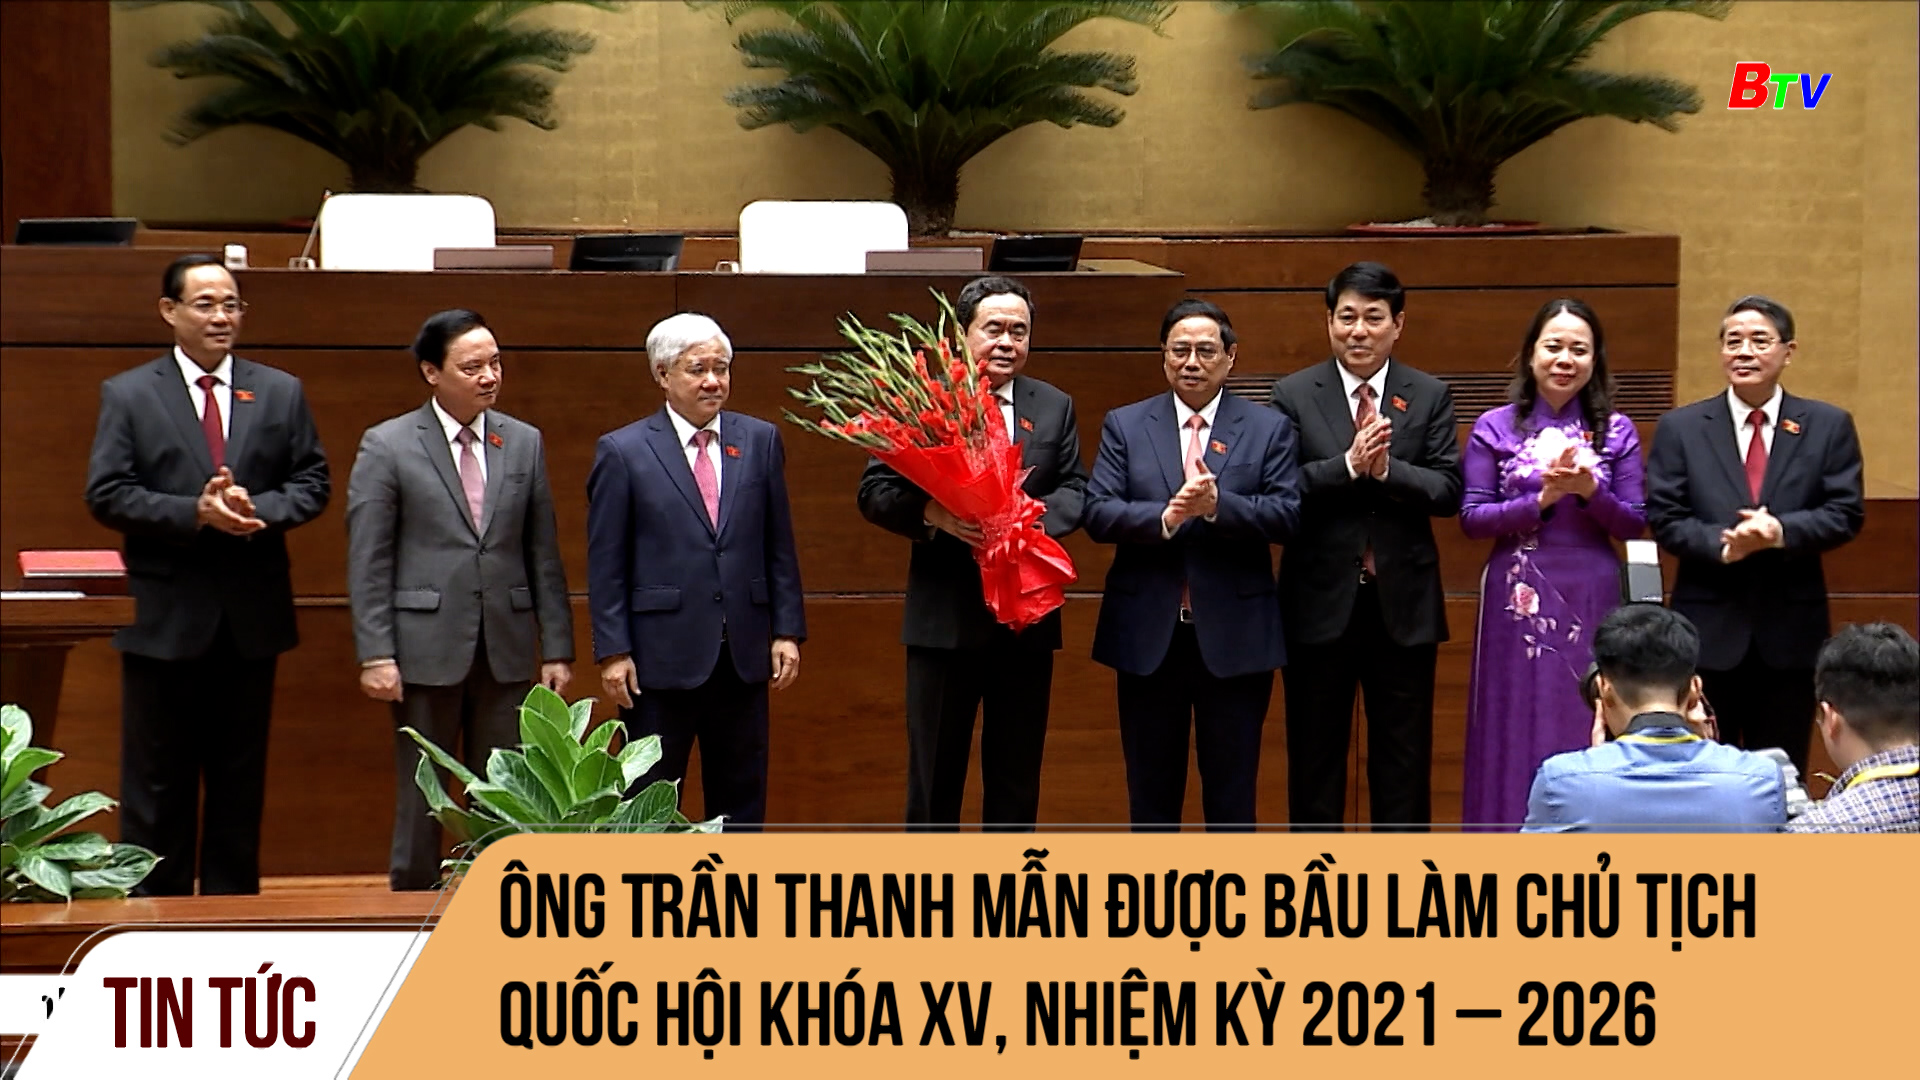 Ông Trần Thanh Mẫn được bầu làm Chủ tịch Quốc hội khóa XV, nhiệm kỳ 2021 – 2026